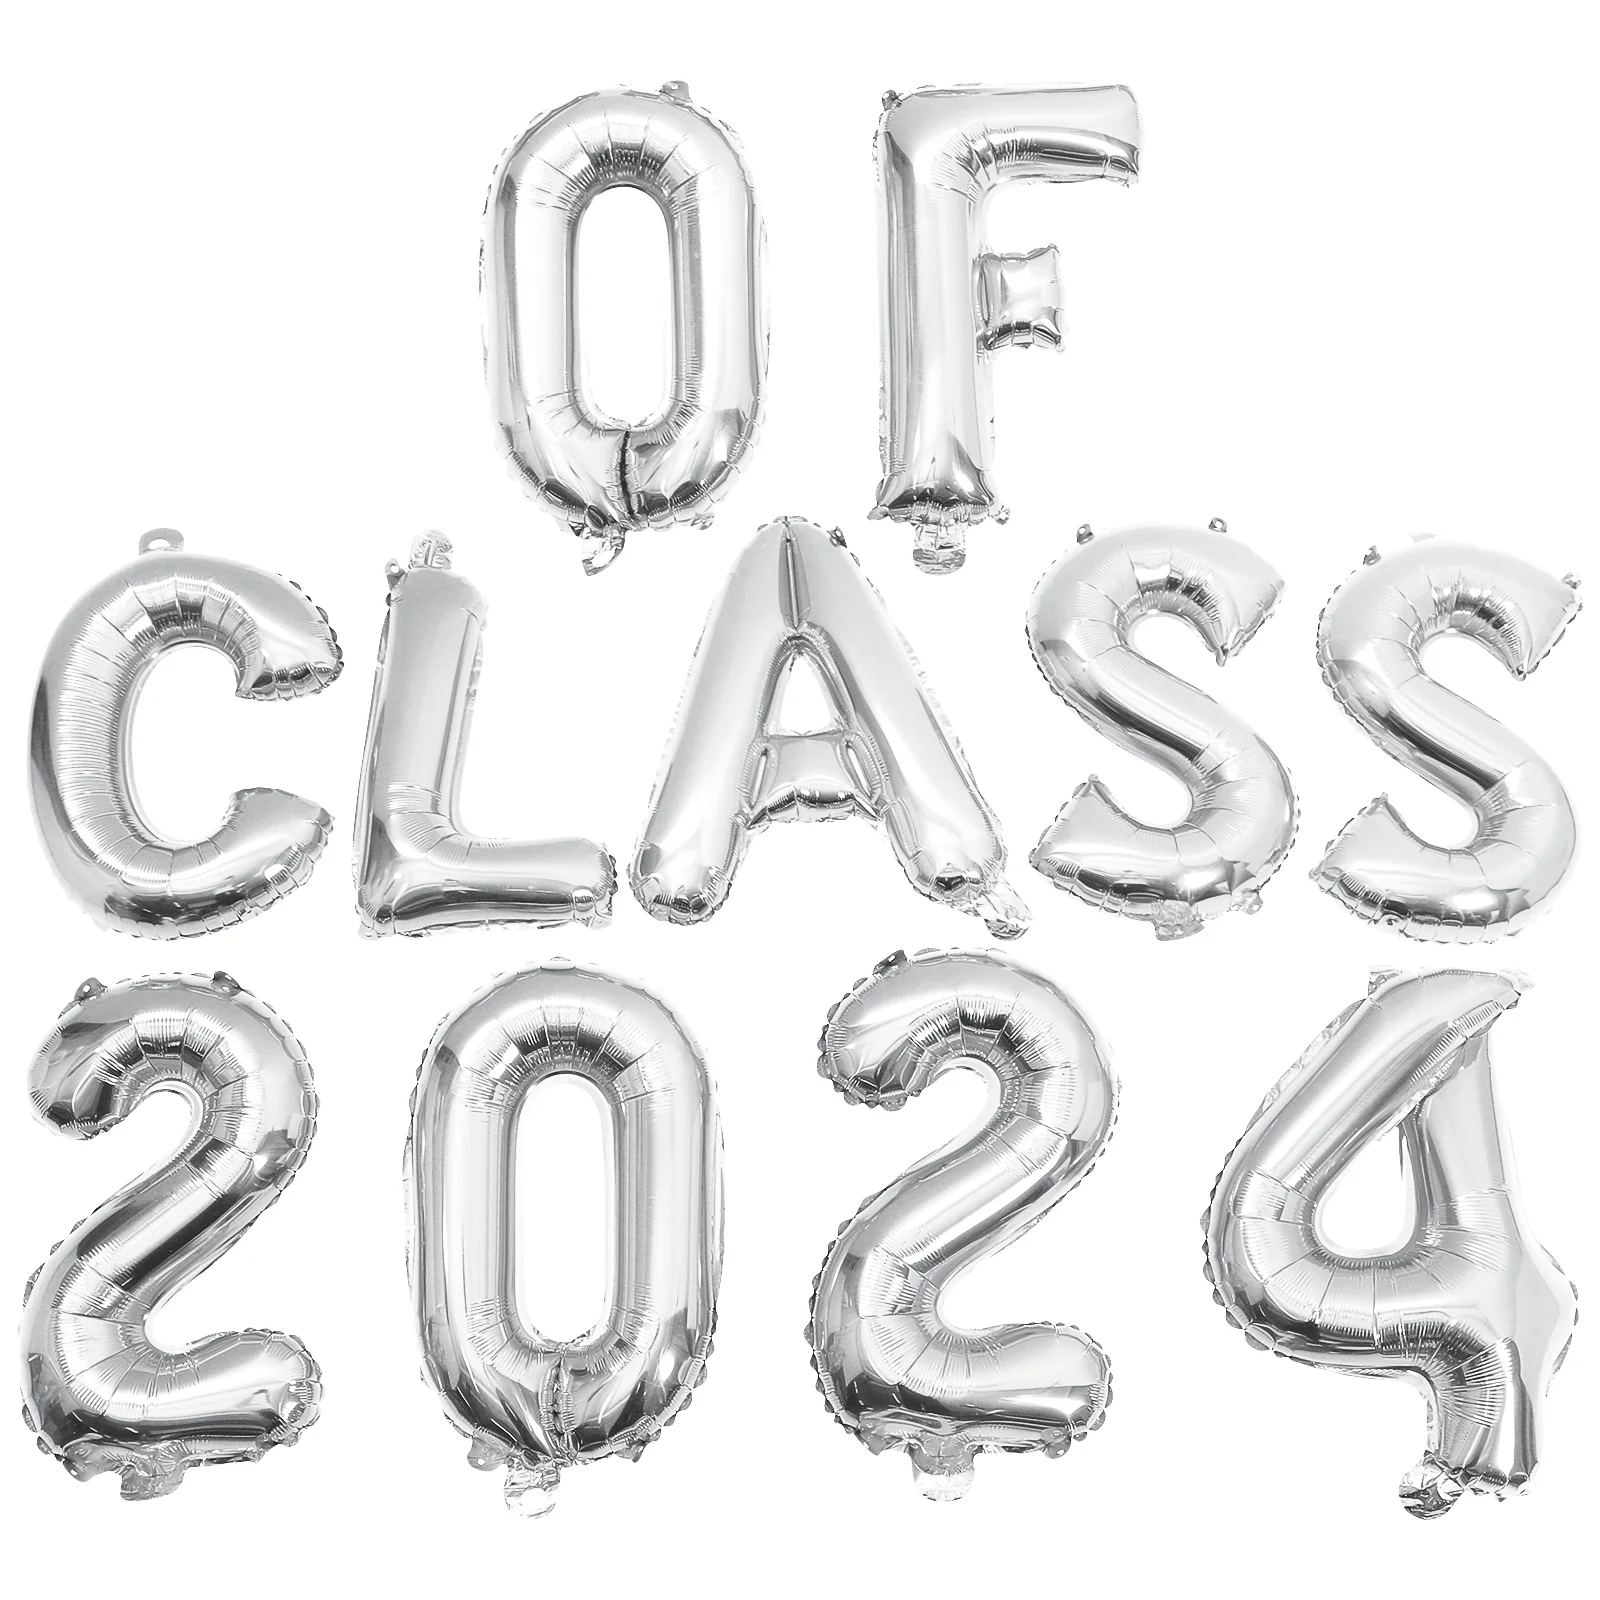 1 комплект выпускного класса 2024 года на воздушном шаре, тематическая вечеринка с воздушными шарами, алюминиевые воздушные шары - 4